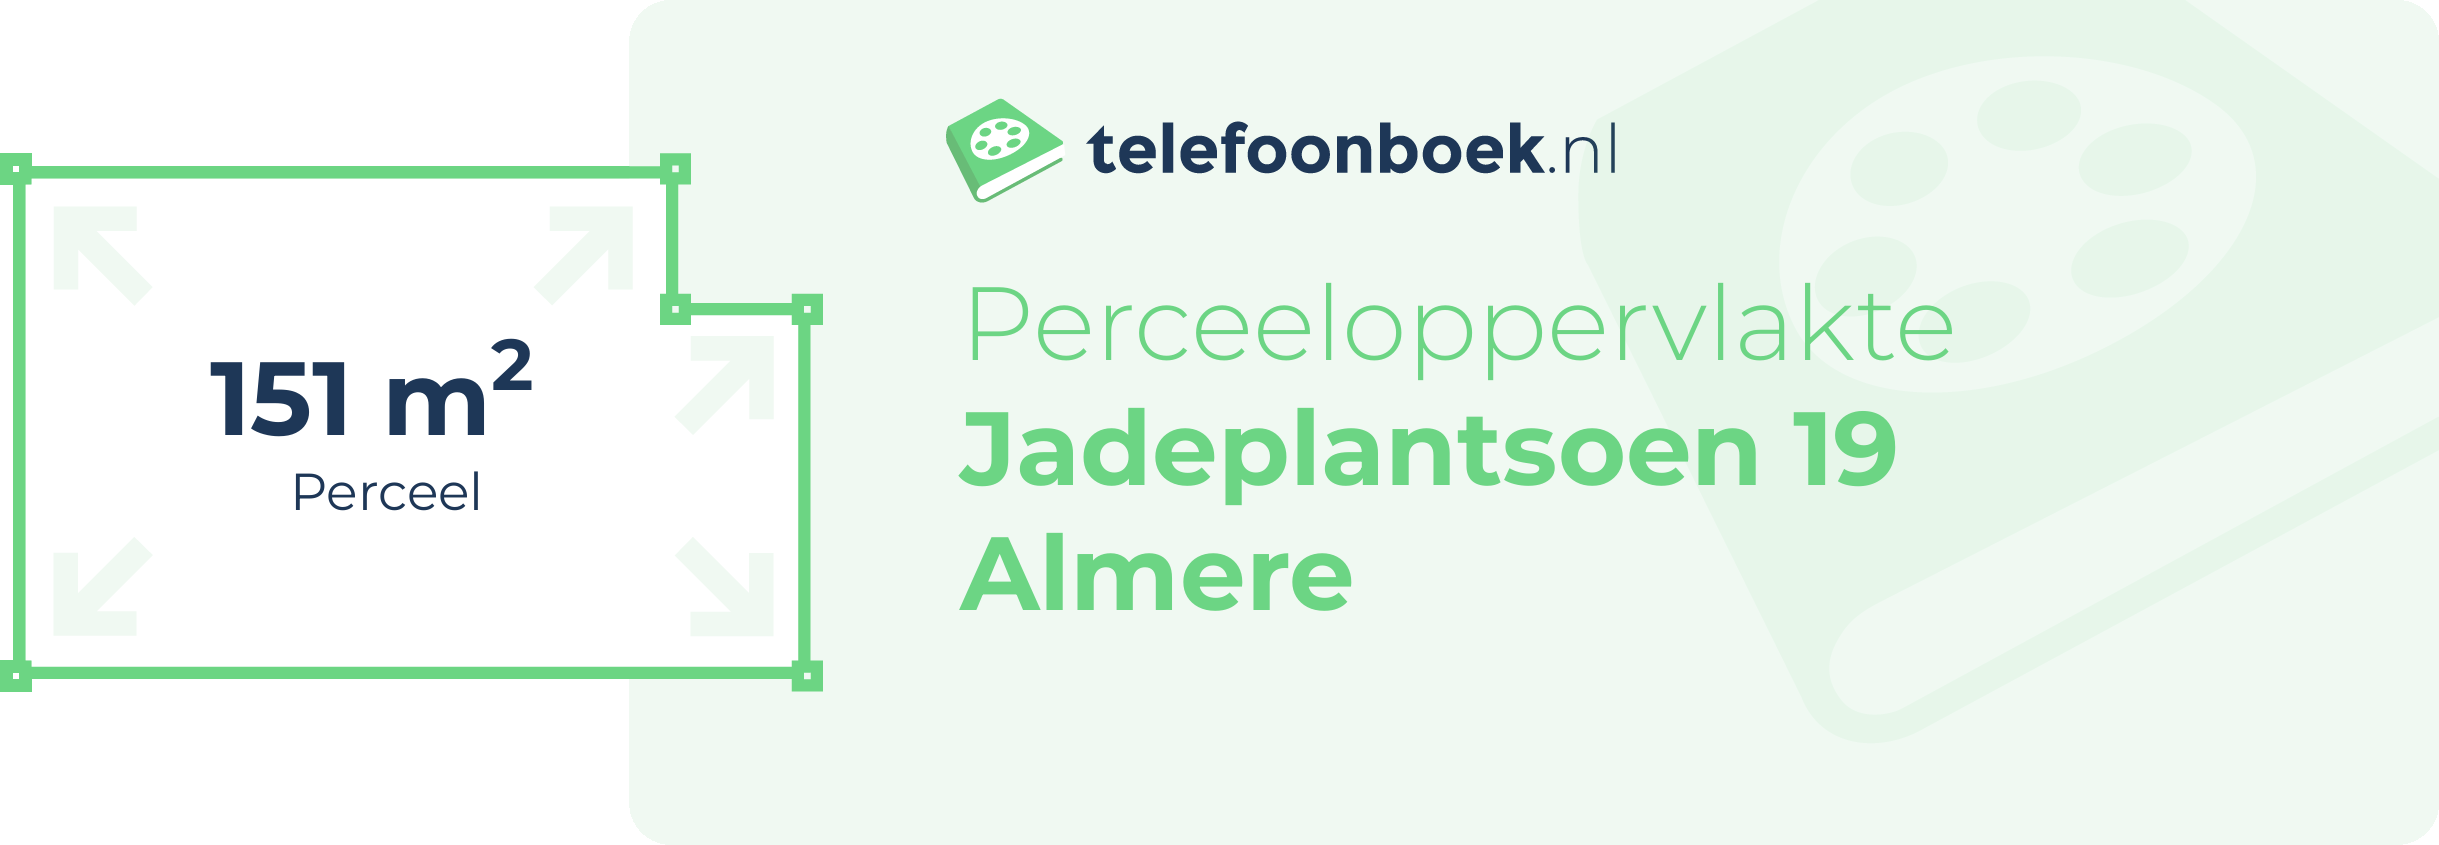 Perceeloppervlakte Jadeplantsoen 19 Almere